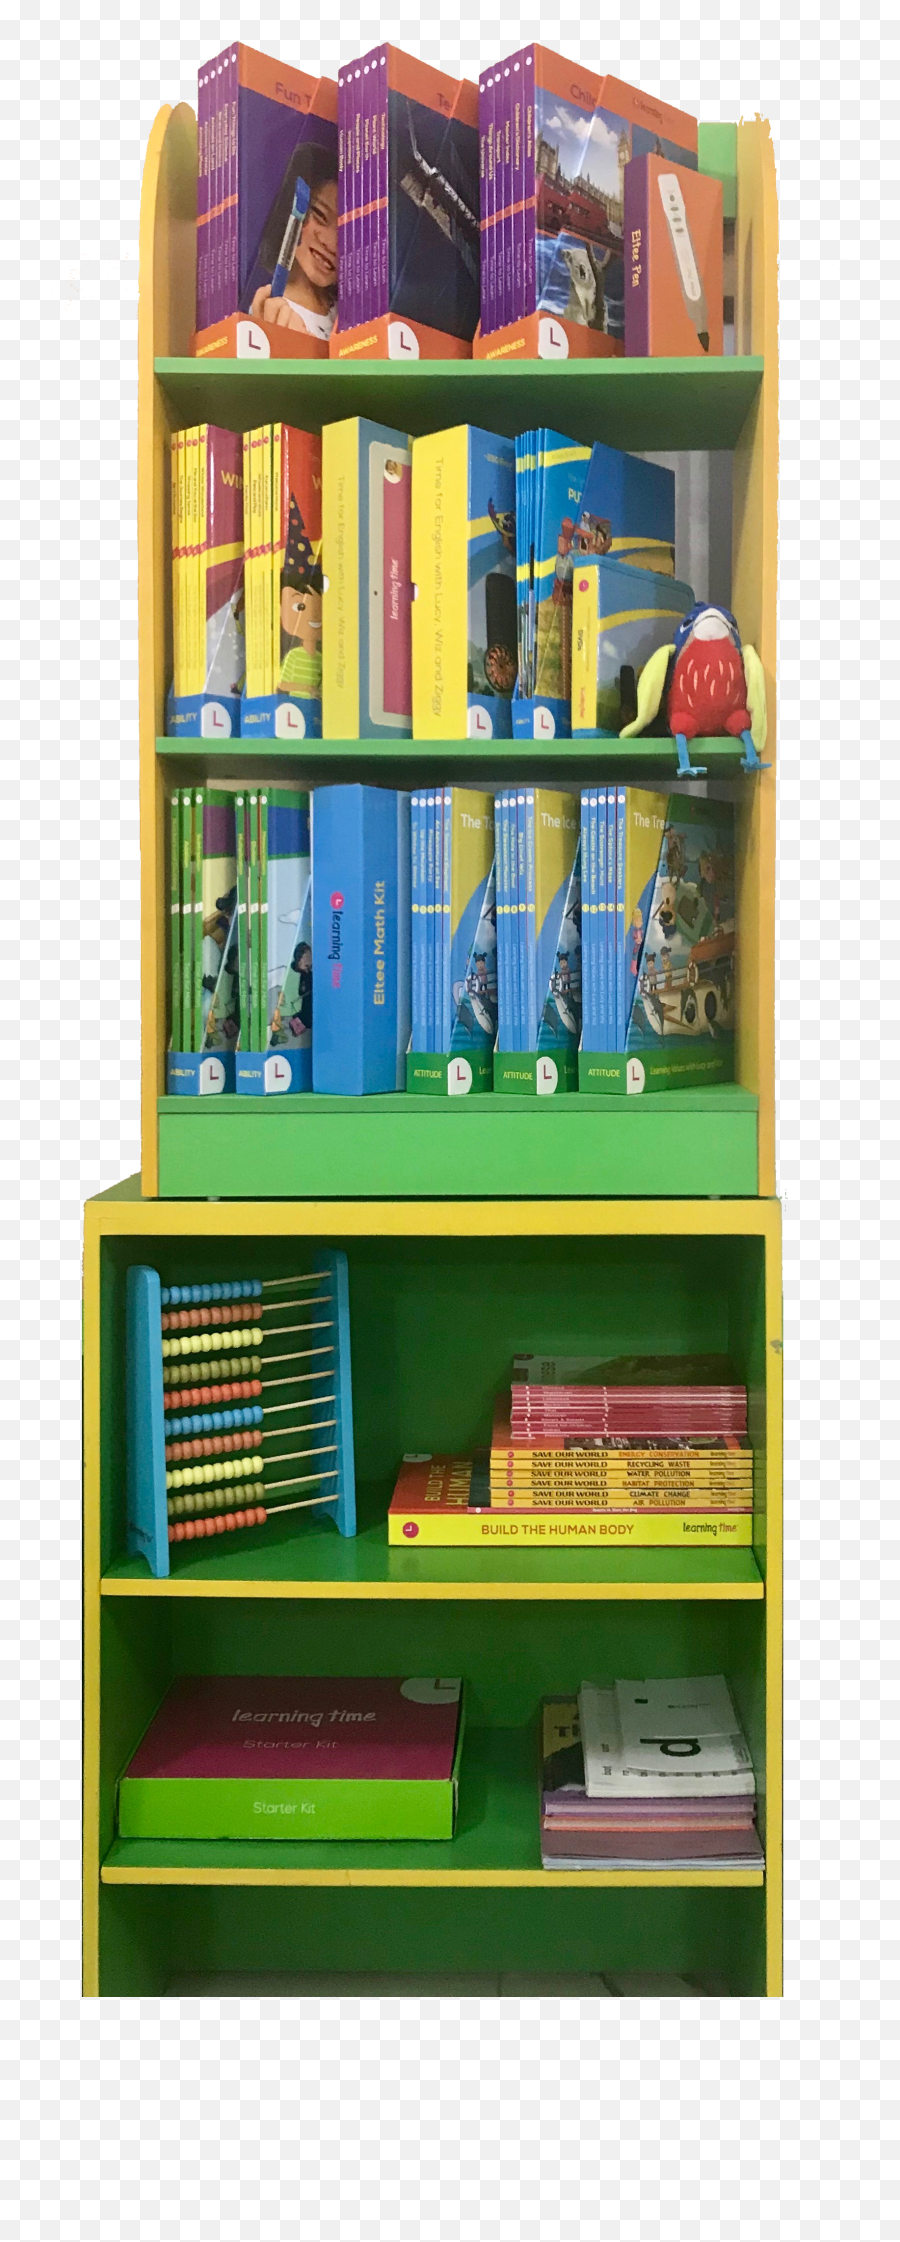 Eltee - Bookshelf Learning Time Png,Shelf Png